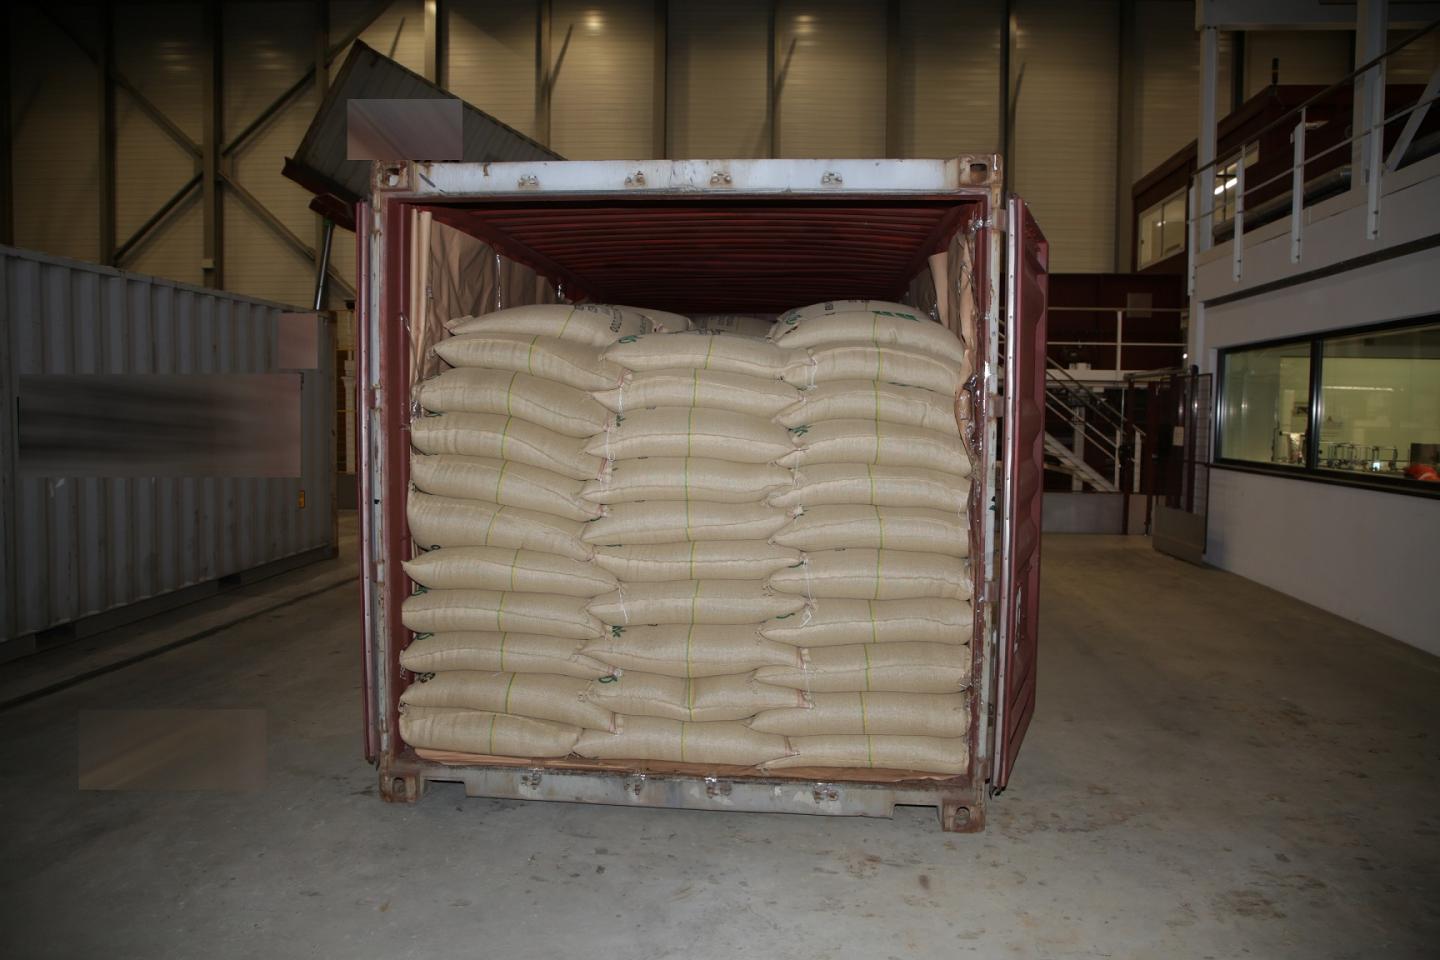 Ein offener Container, gefüllt mit Jutesäcken in einer Lagerhalle.